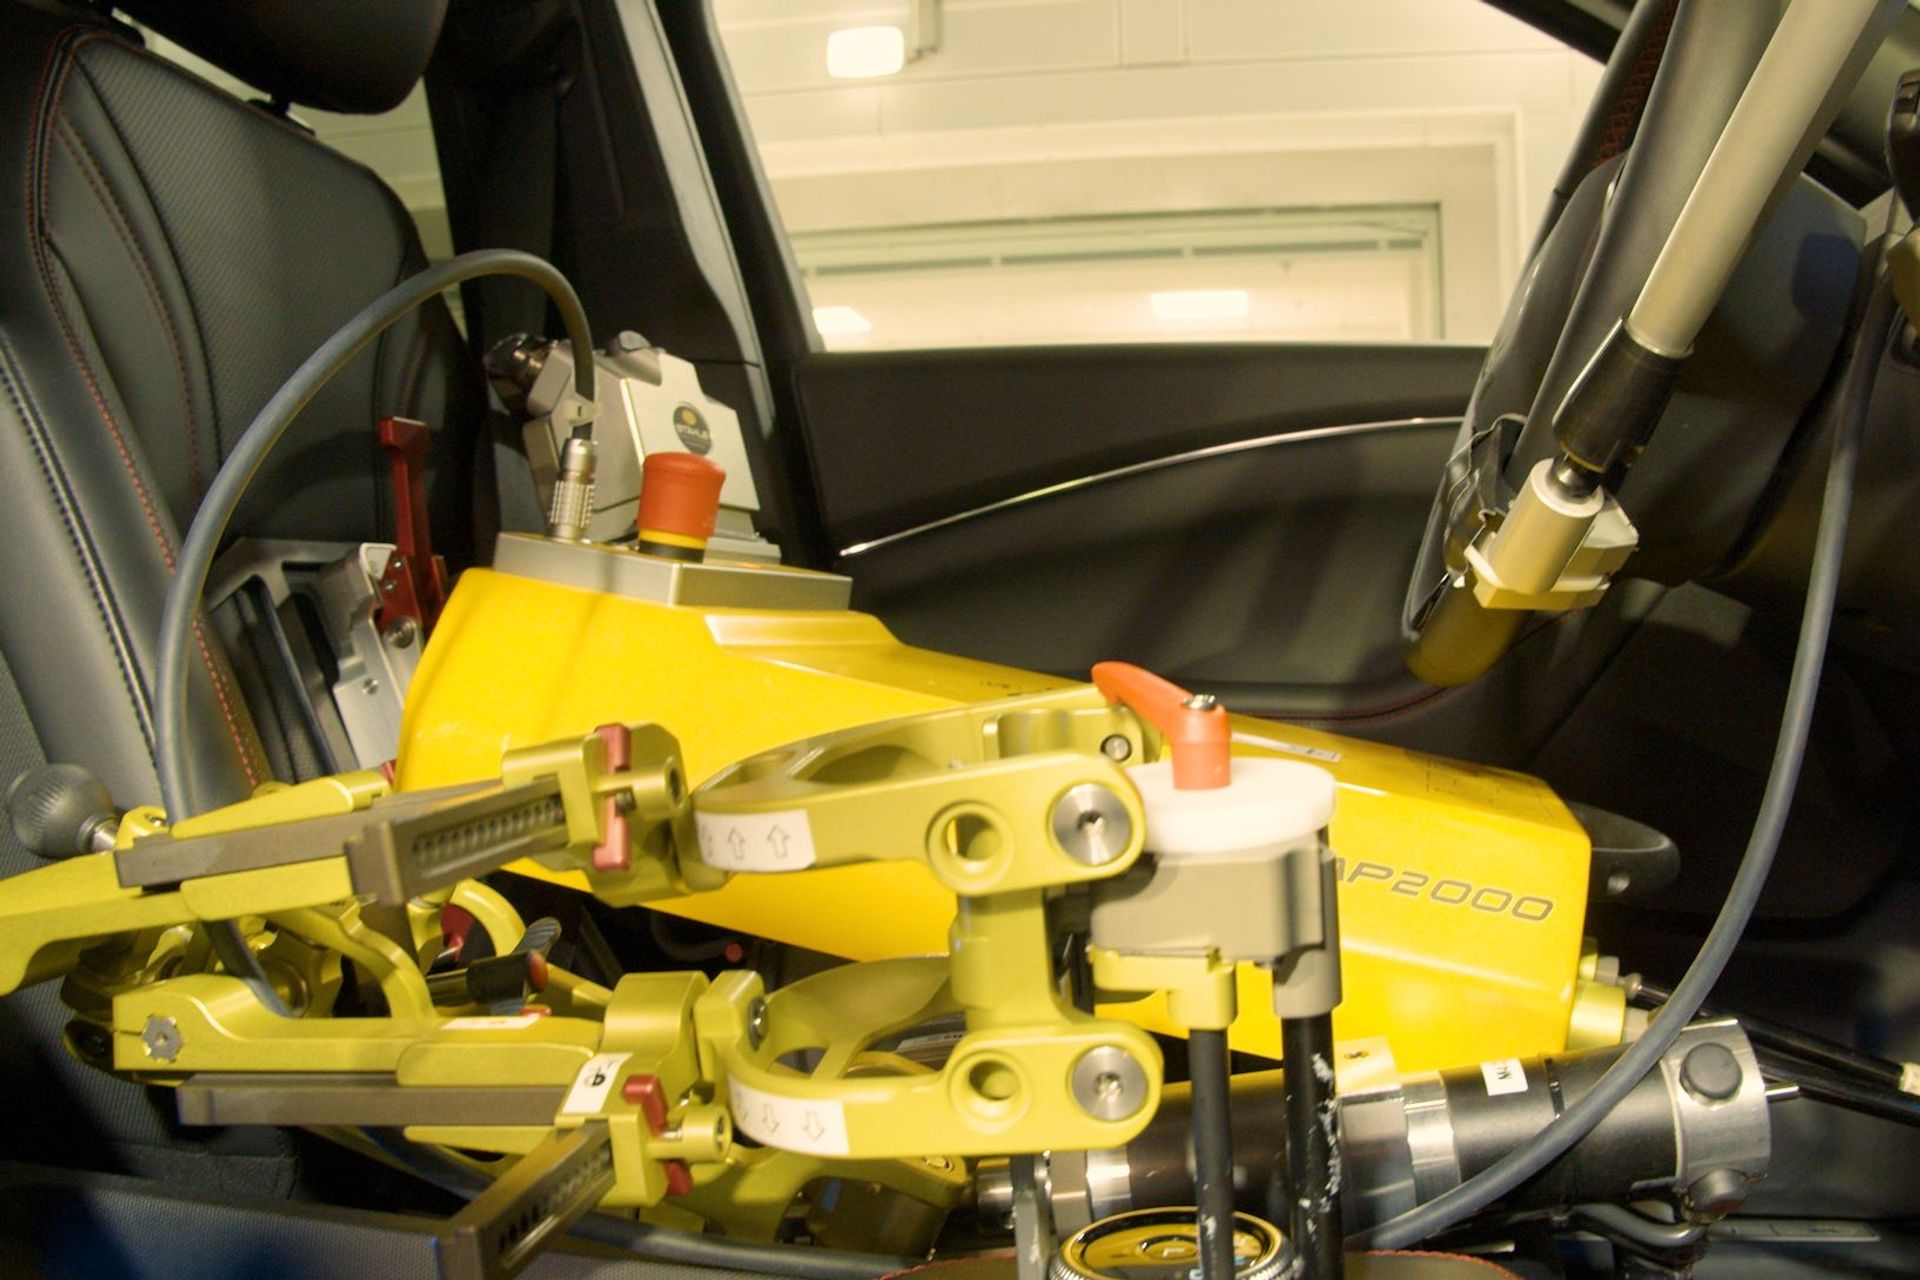 De tests uitgevoerd door de robots "Shelby" en "Miles" in het onderzoekscentrum Ford Weather Factory in Keulen